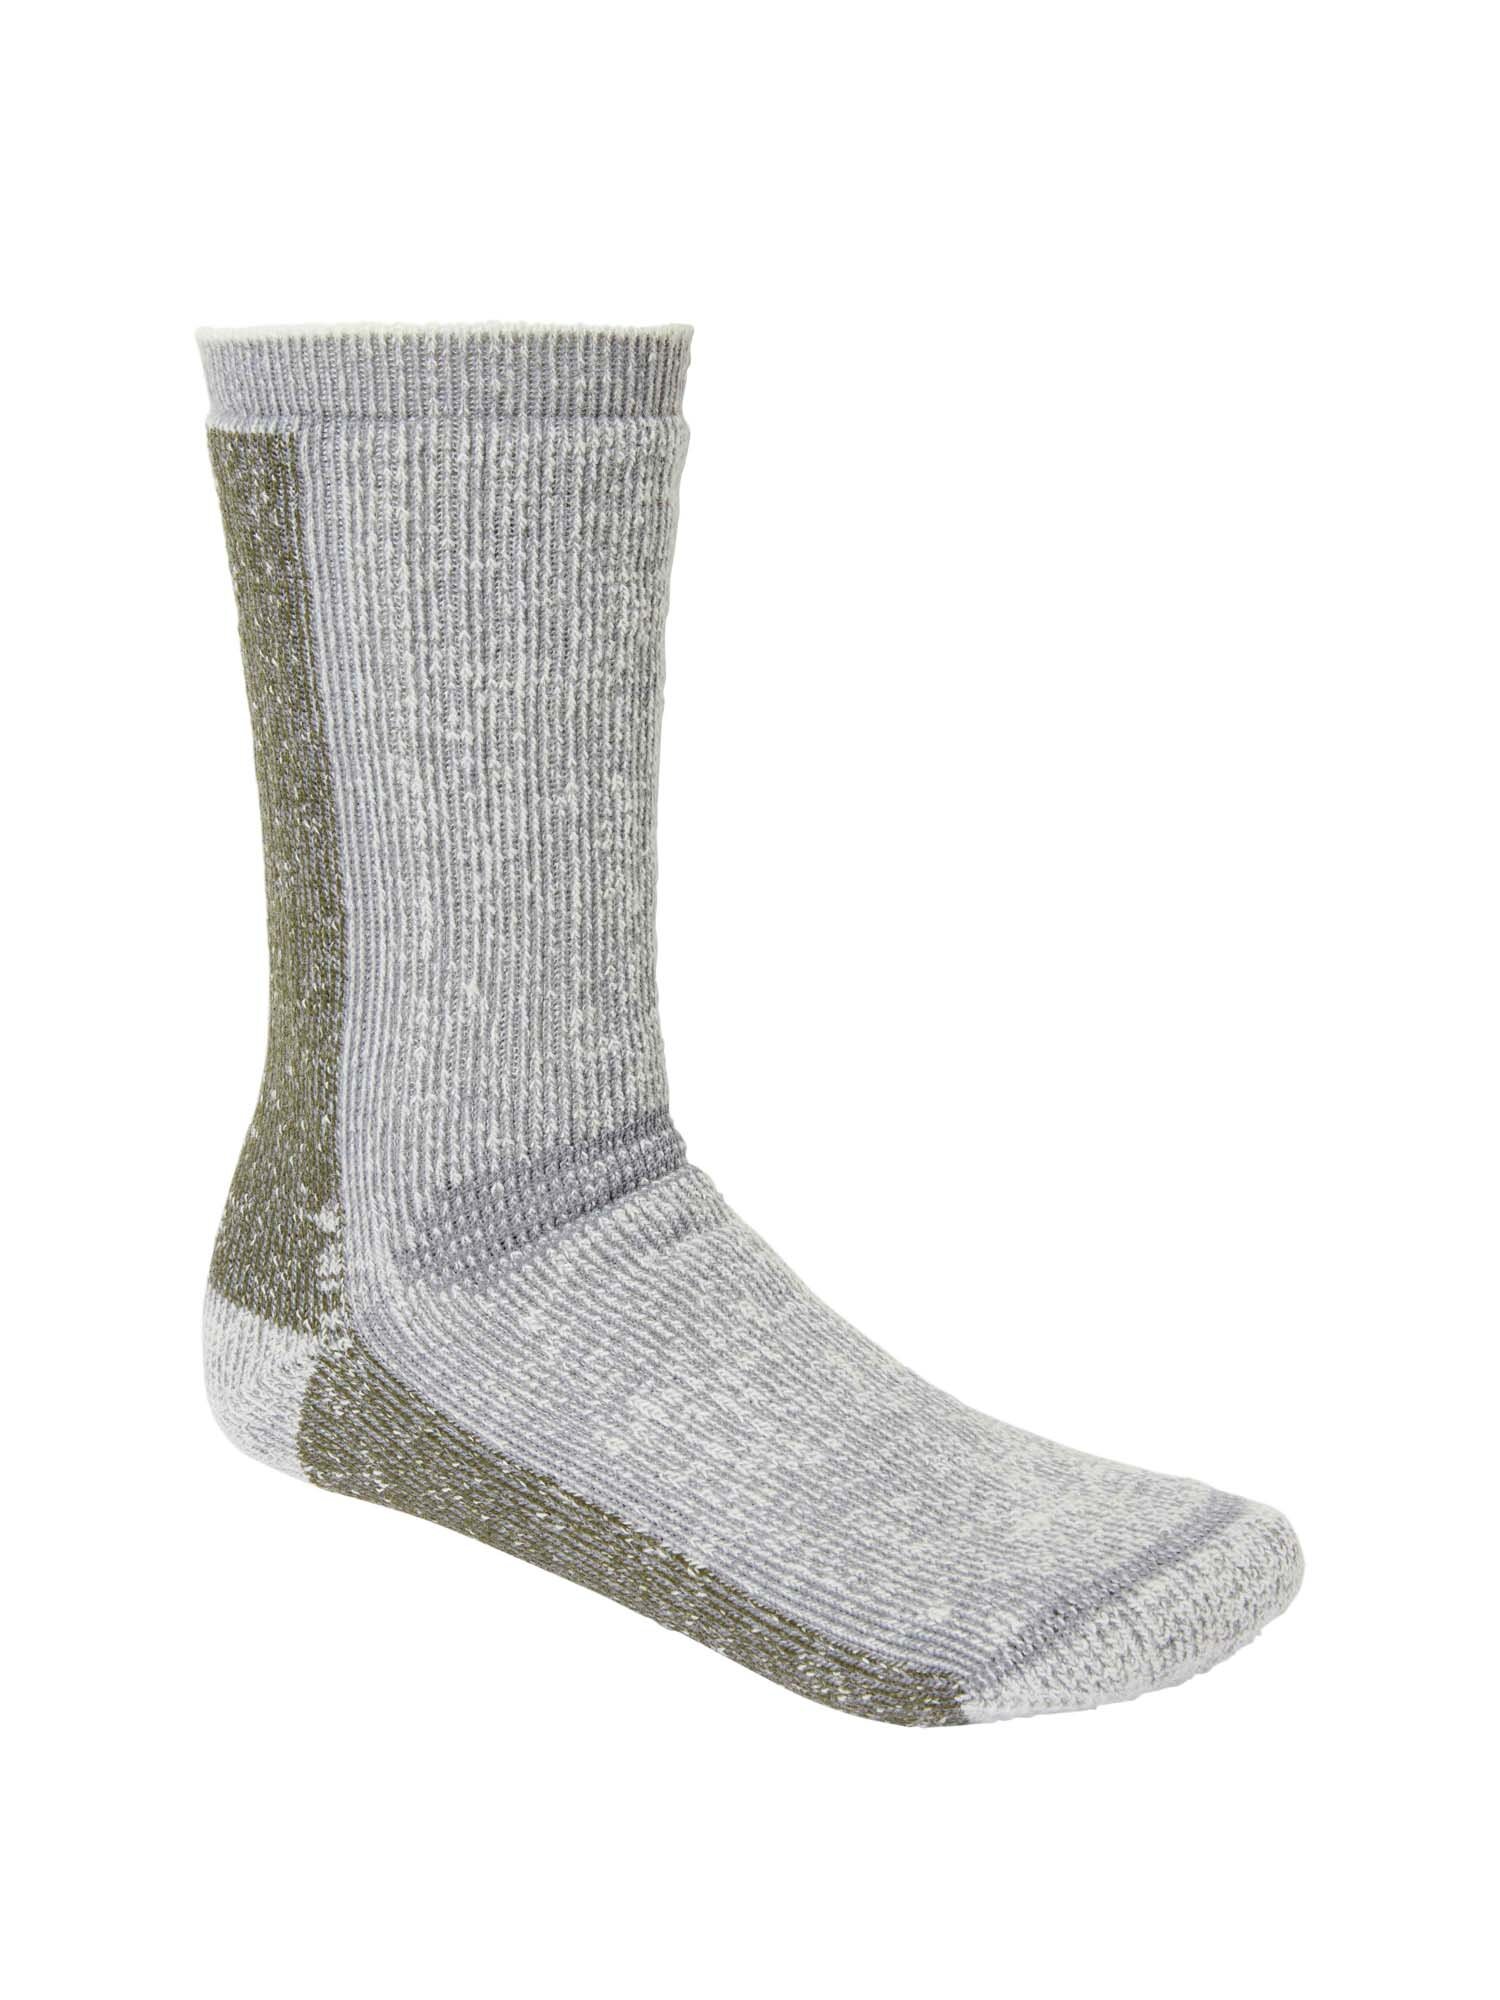 Select Frostbite Winter Wool Socks